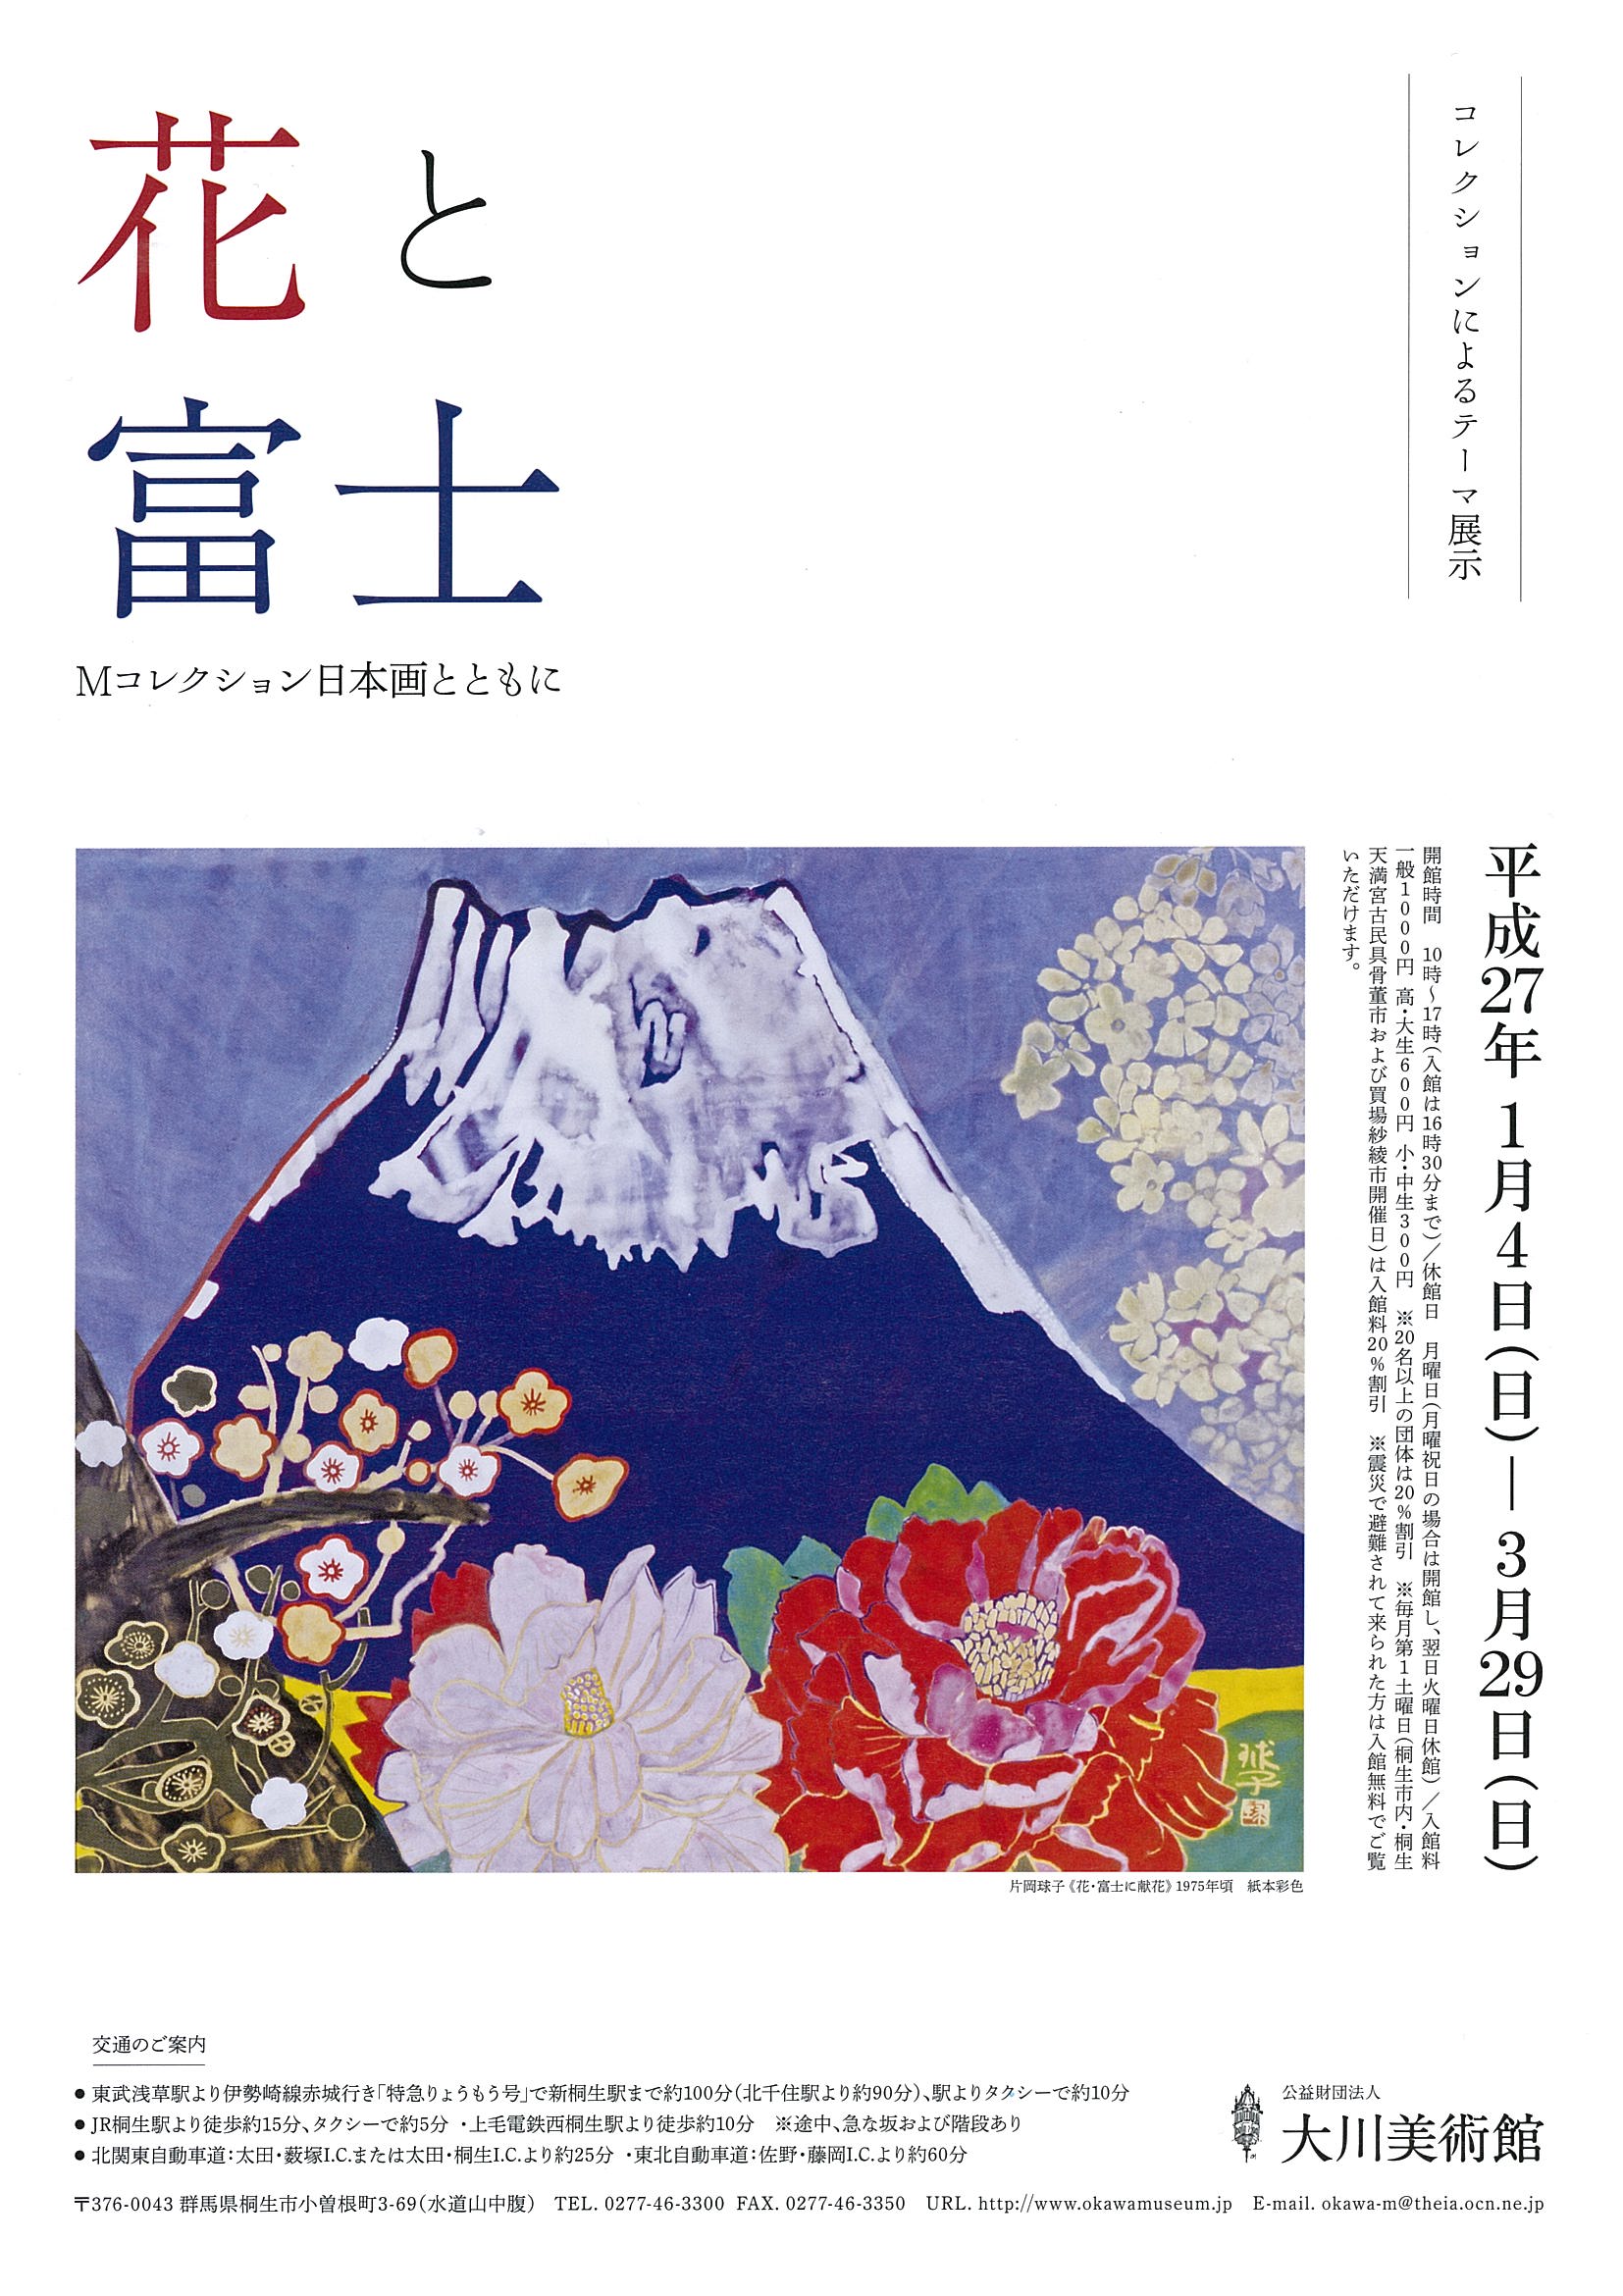 コレクションによるテーマ展示<br>「花と富士」<br>Ｍコレクション日本画とともに